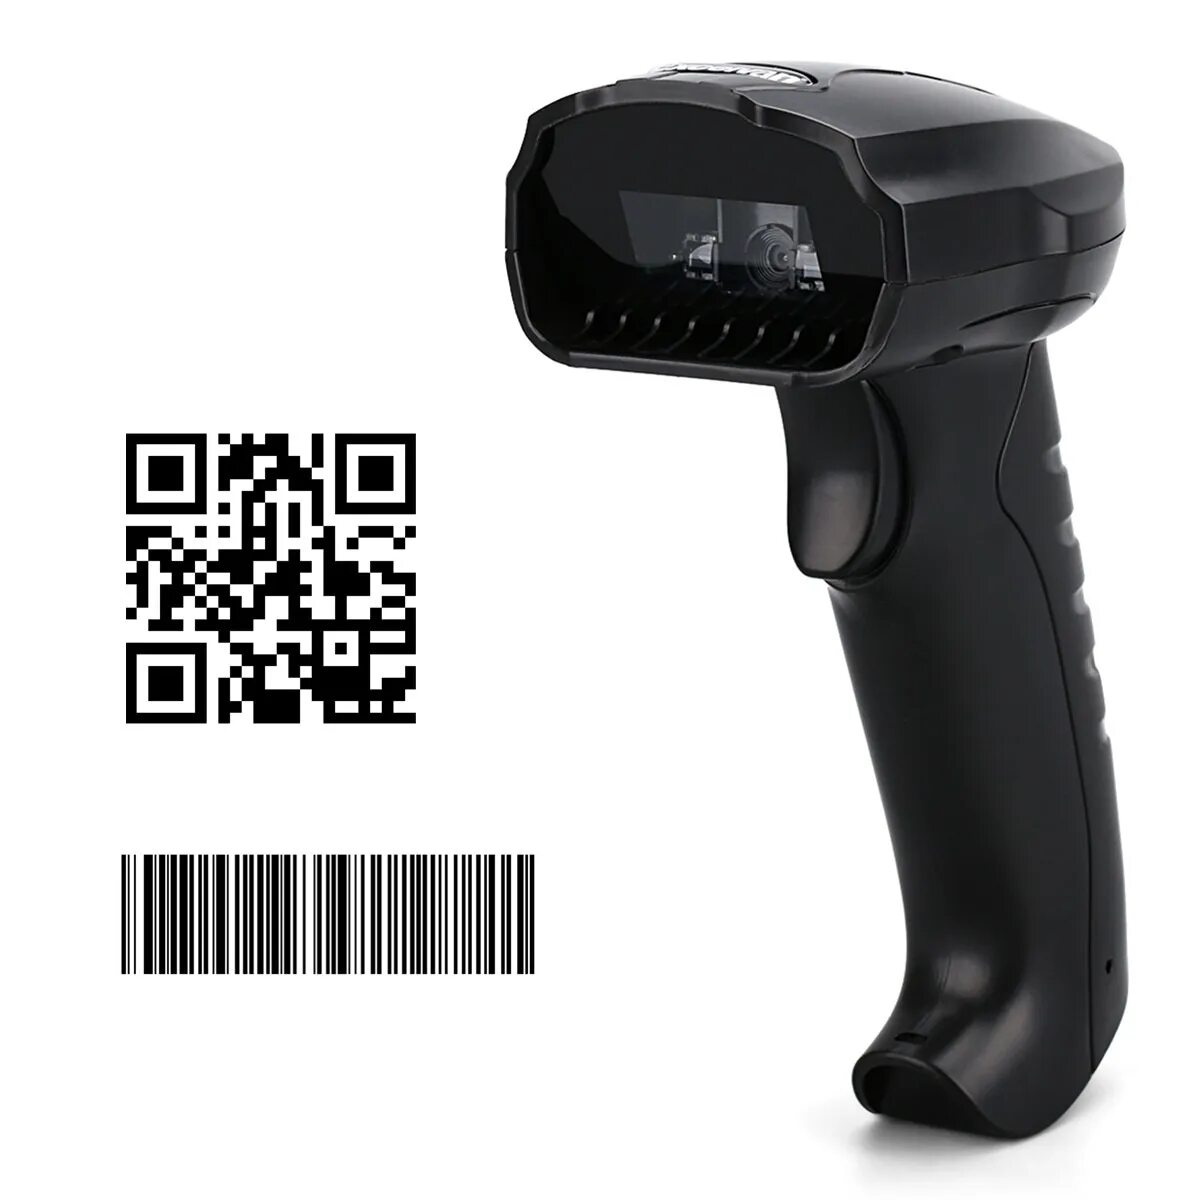 Отсканировать штрих. Сканер штрих-кодов Hakko c5009. 2d сканер штрих-кода для считывания кода. Сканер штрих кодов a680. Сканер штрихкодов YHD-m300d.